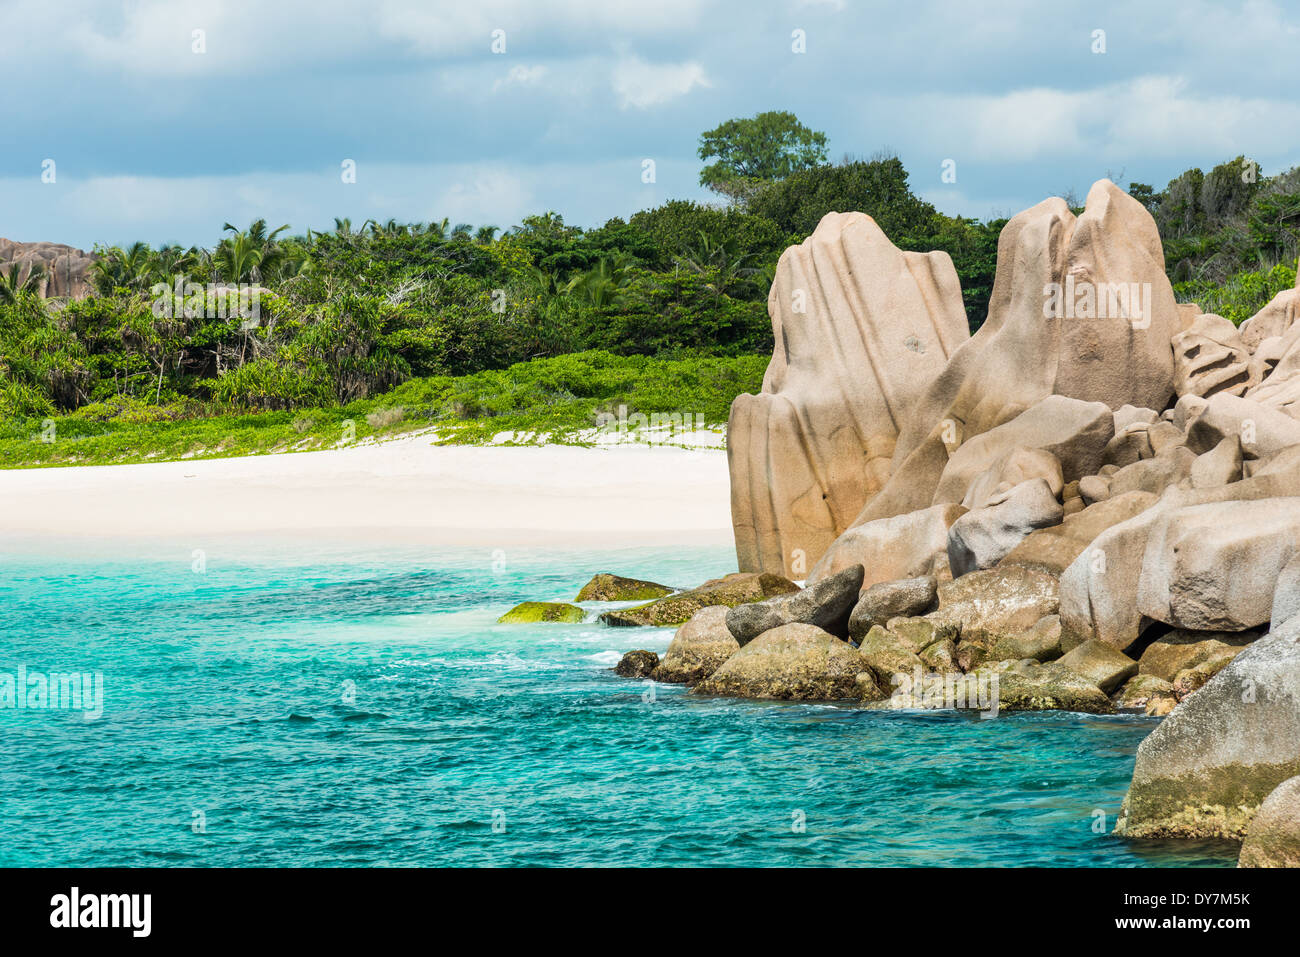 Tropical turquoise mer avec les rochers de granit Banque D'Images